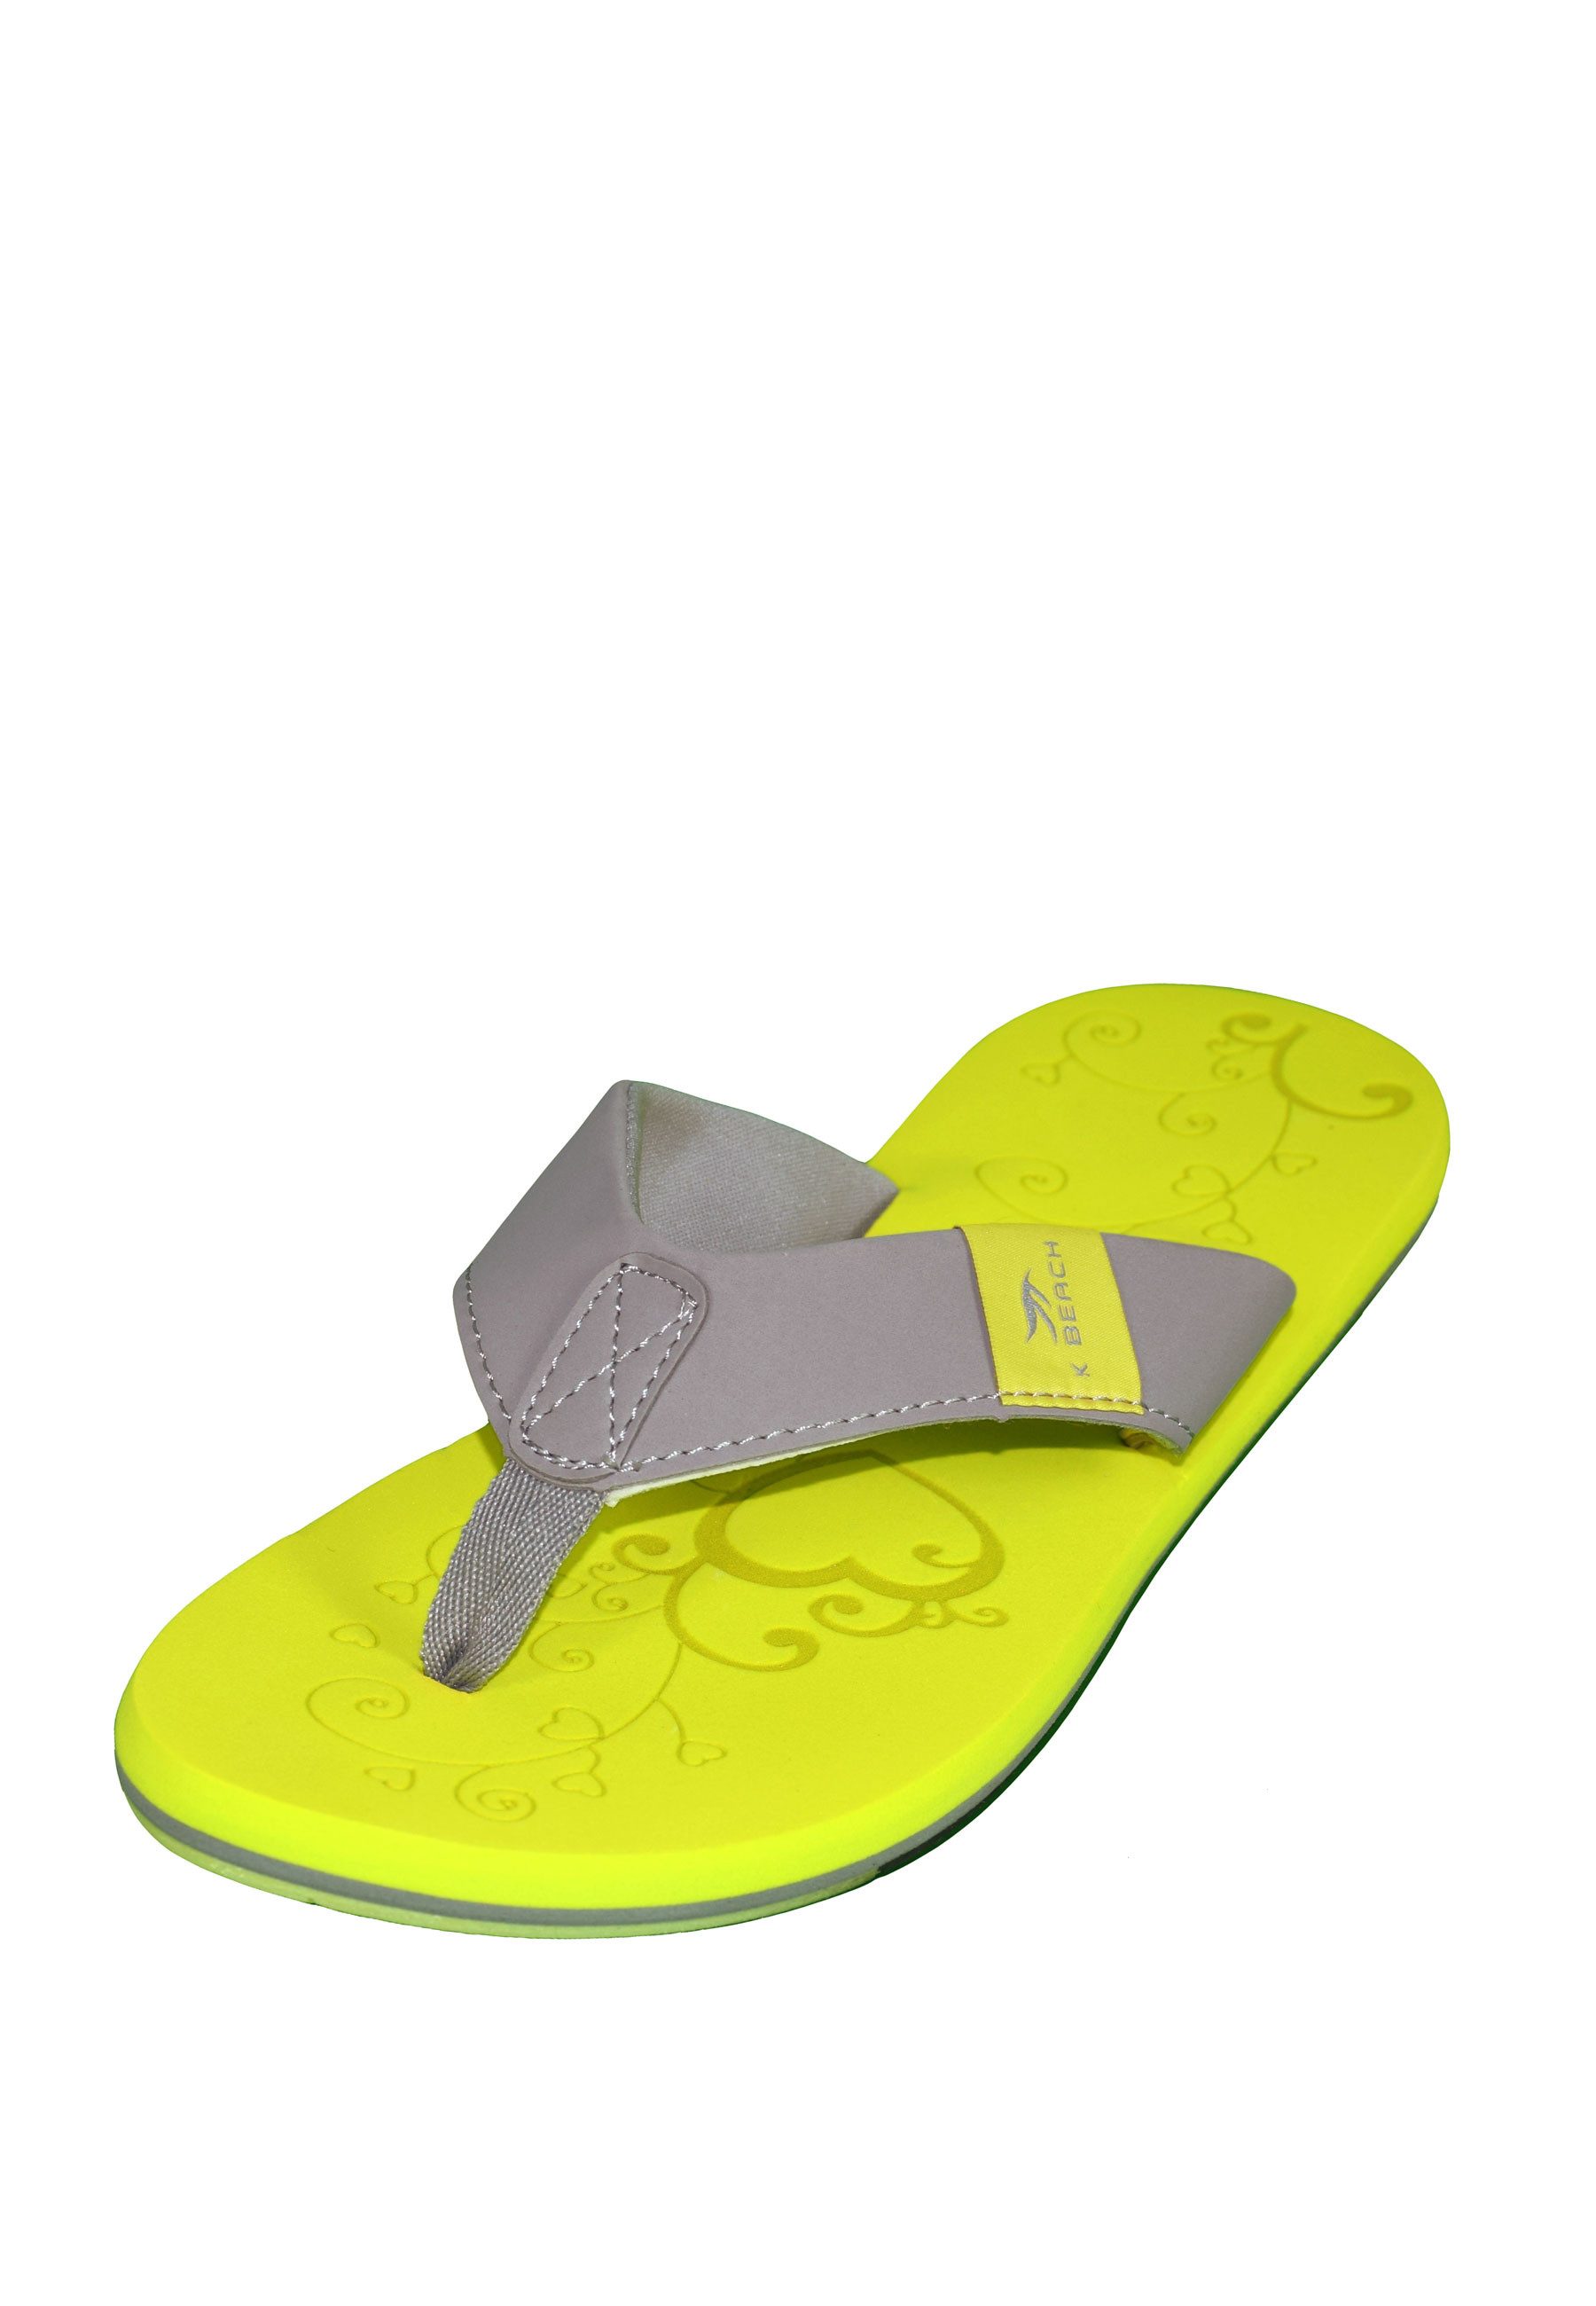 MADSea MS-Beach Badepantolette leichter Sommer Flip Flop mit Zehentrenner - schnelltrocknend